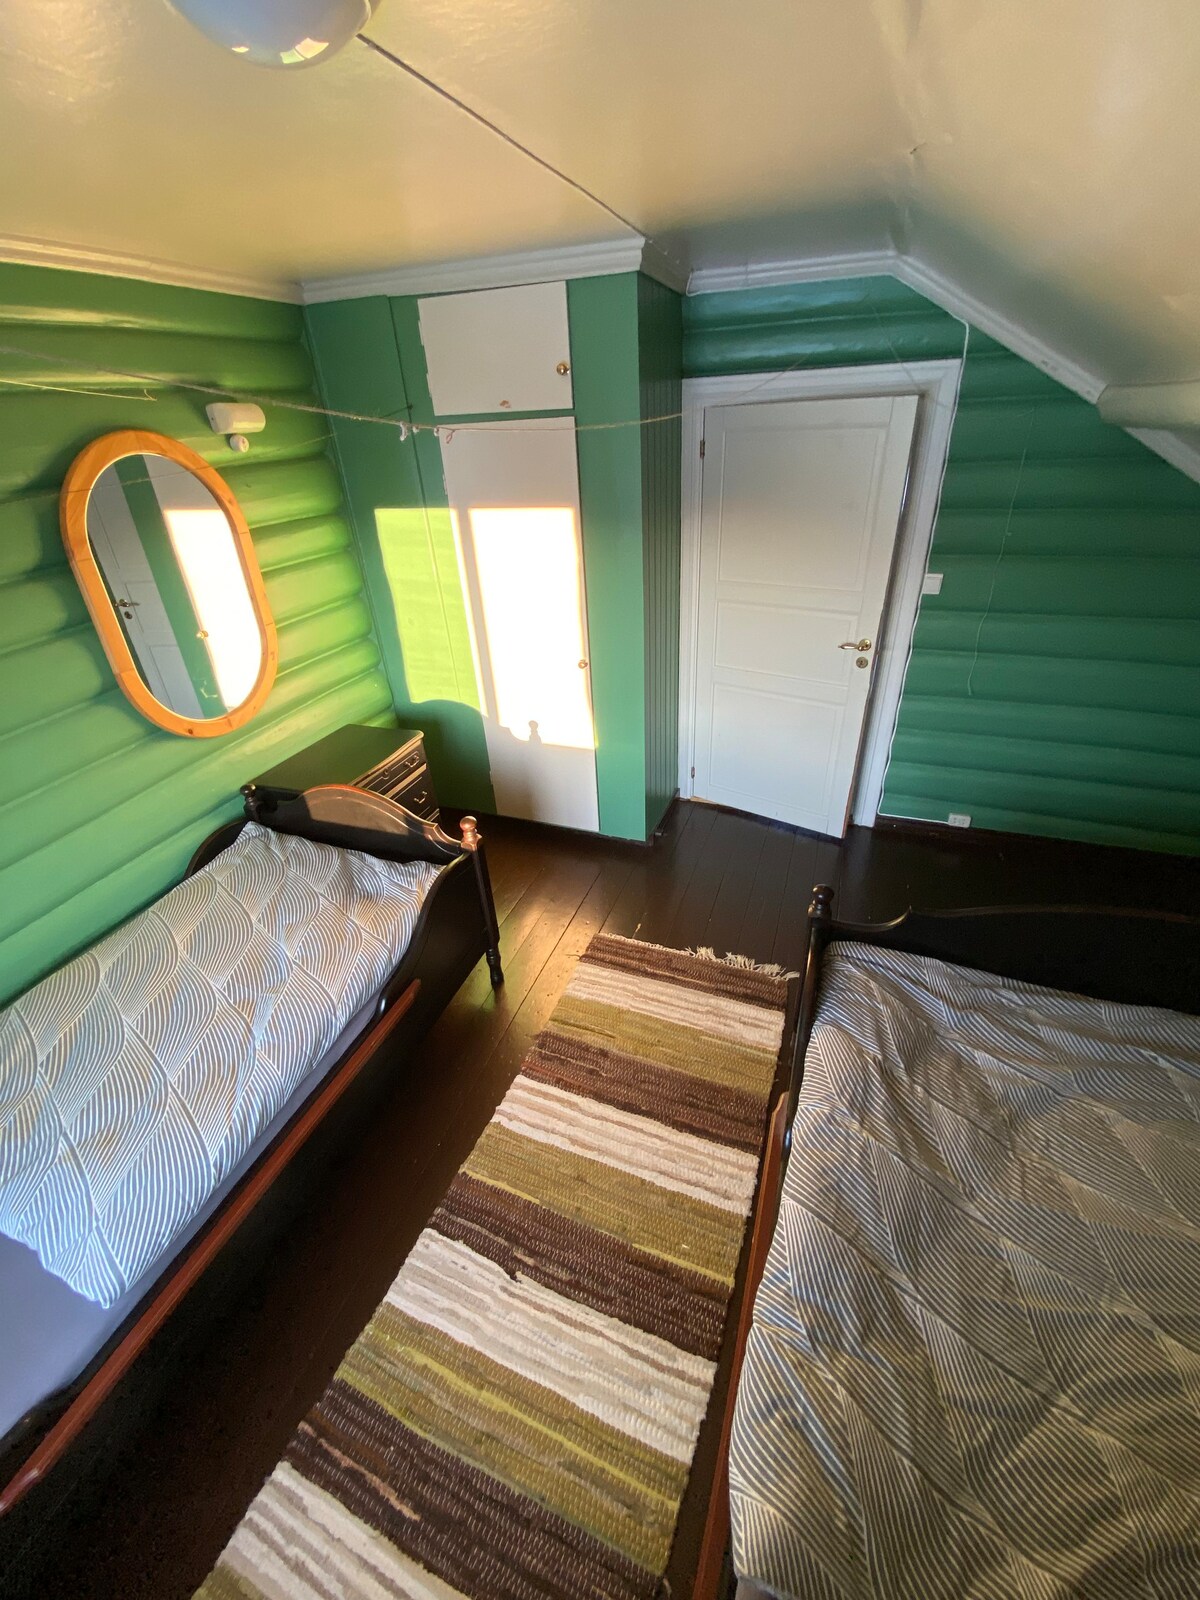 Lovely Norwegian cabin - Room n. 3